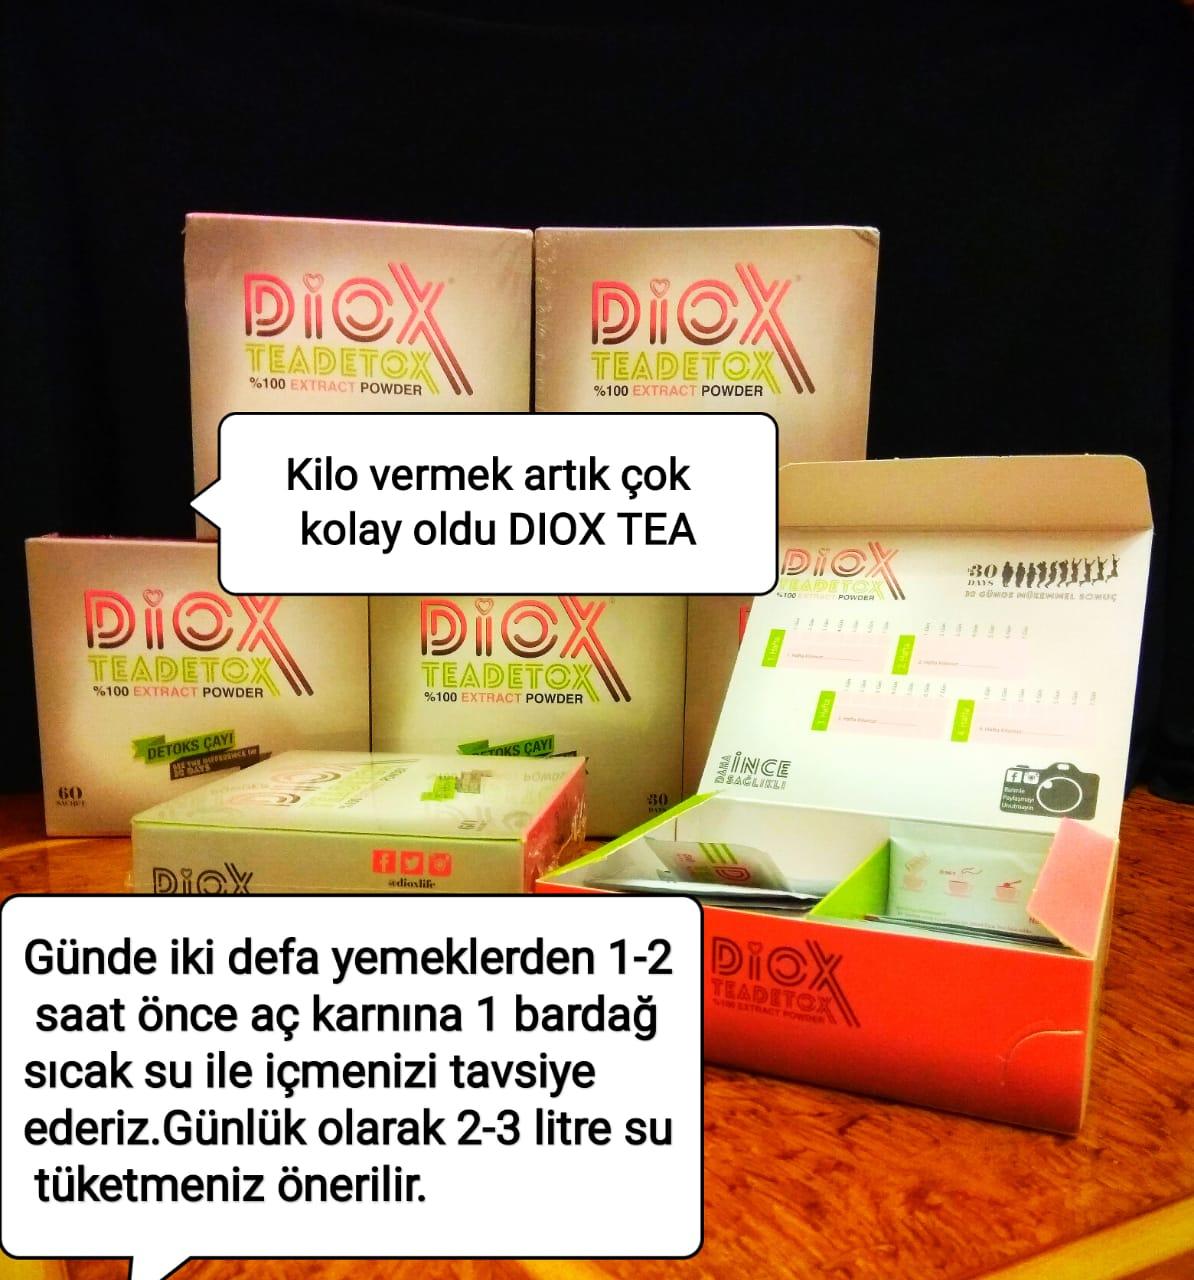 Турция детокс. Melissa Premium Detox Tea Diox. Diox чай для похудения. Турецкий чай для похудения Diox. Detox чай для похудения.